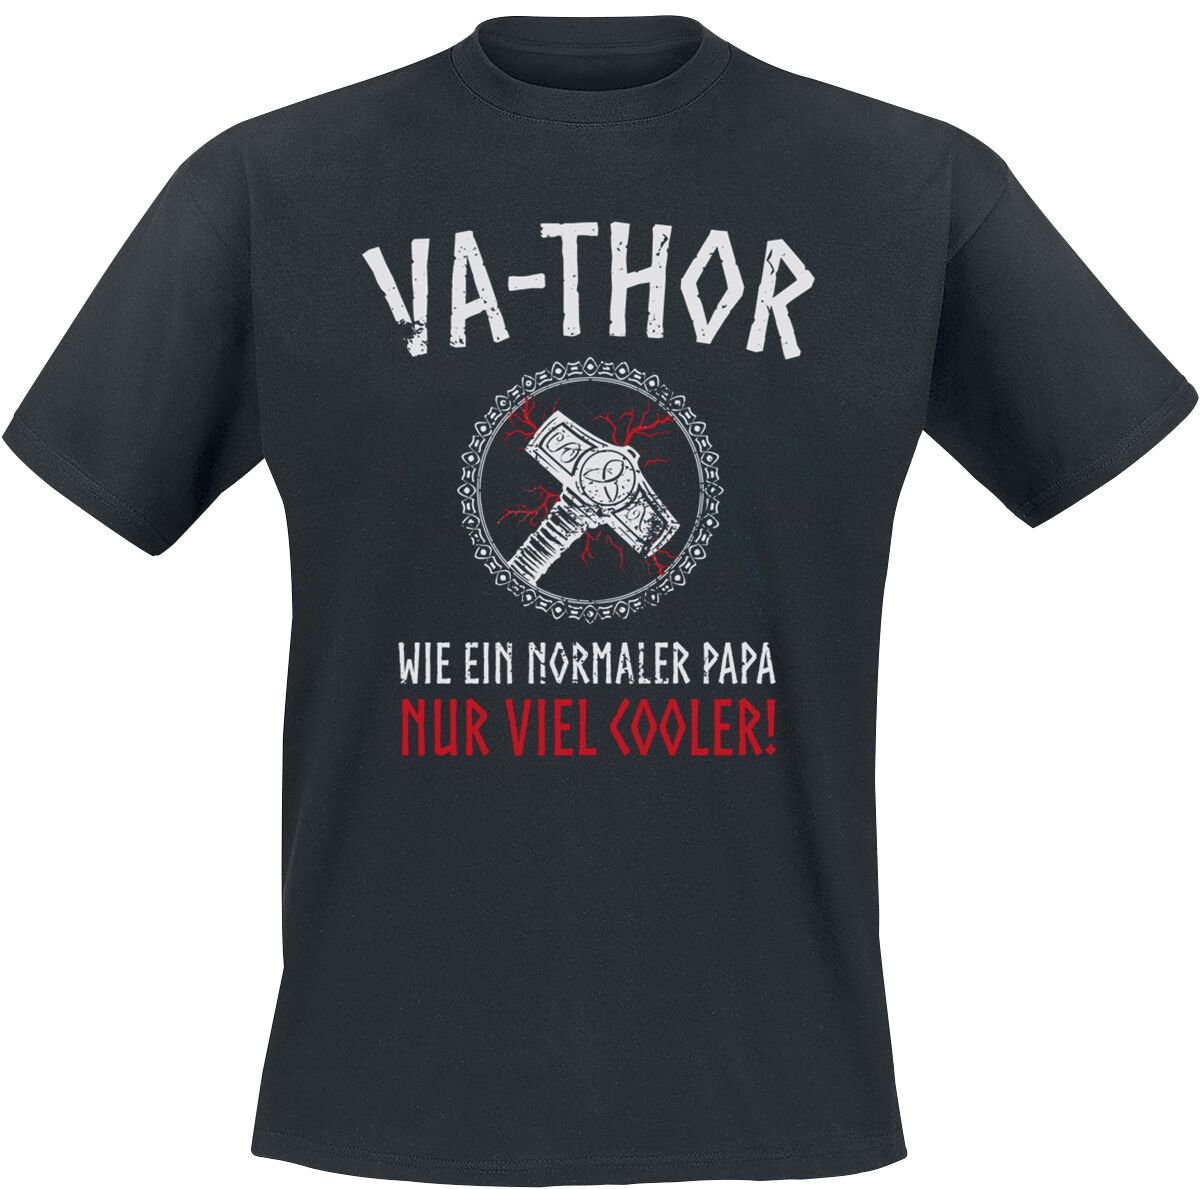 Familie & Freunde T-Shirt - Va-Thor - S bis 4XL - für Männer - Größe M - schwarz